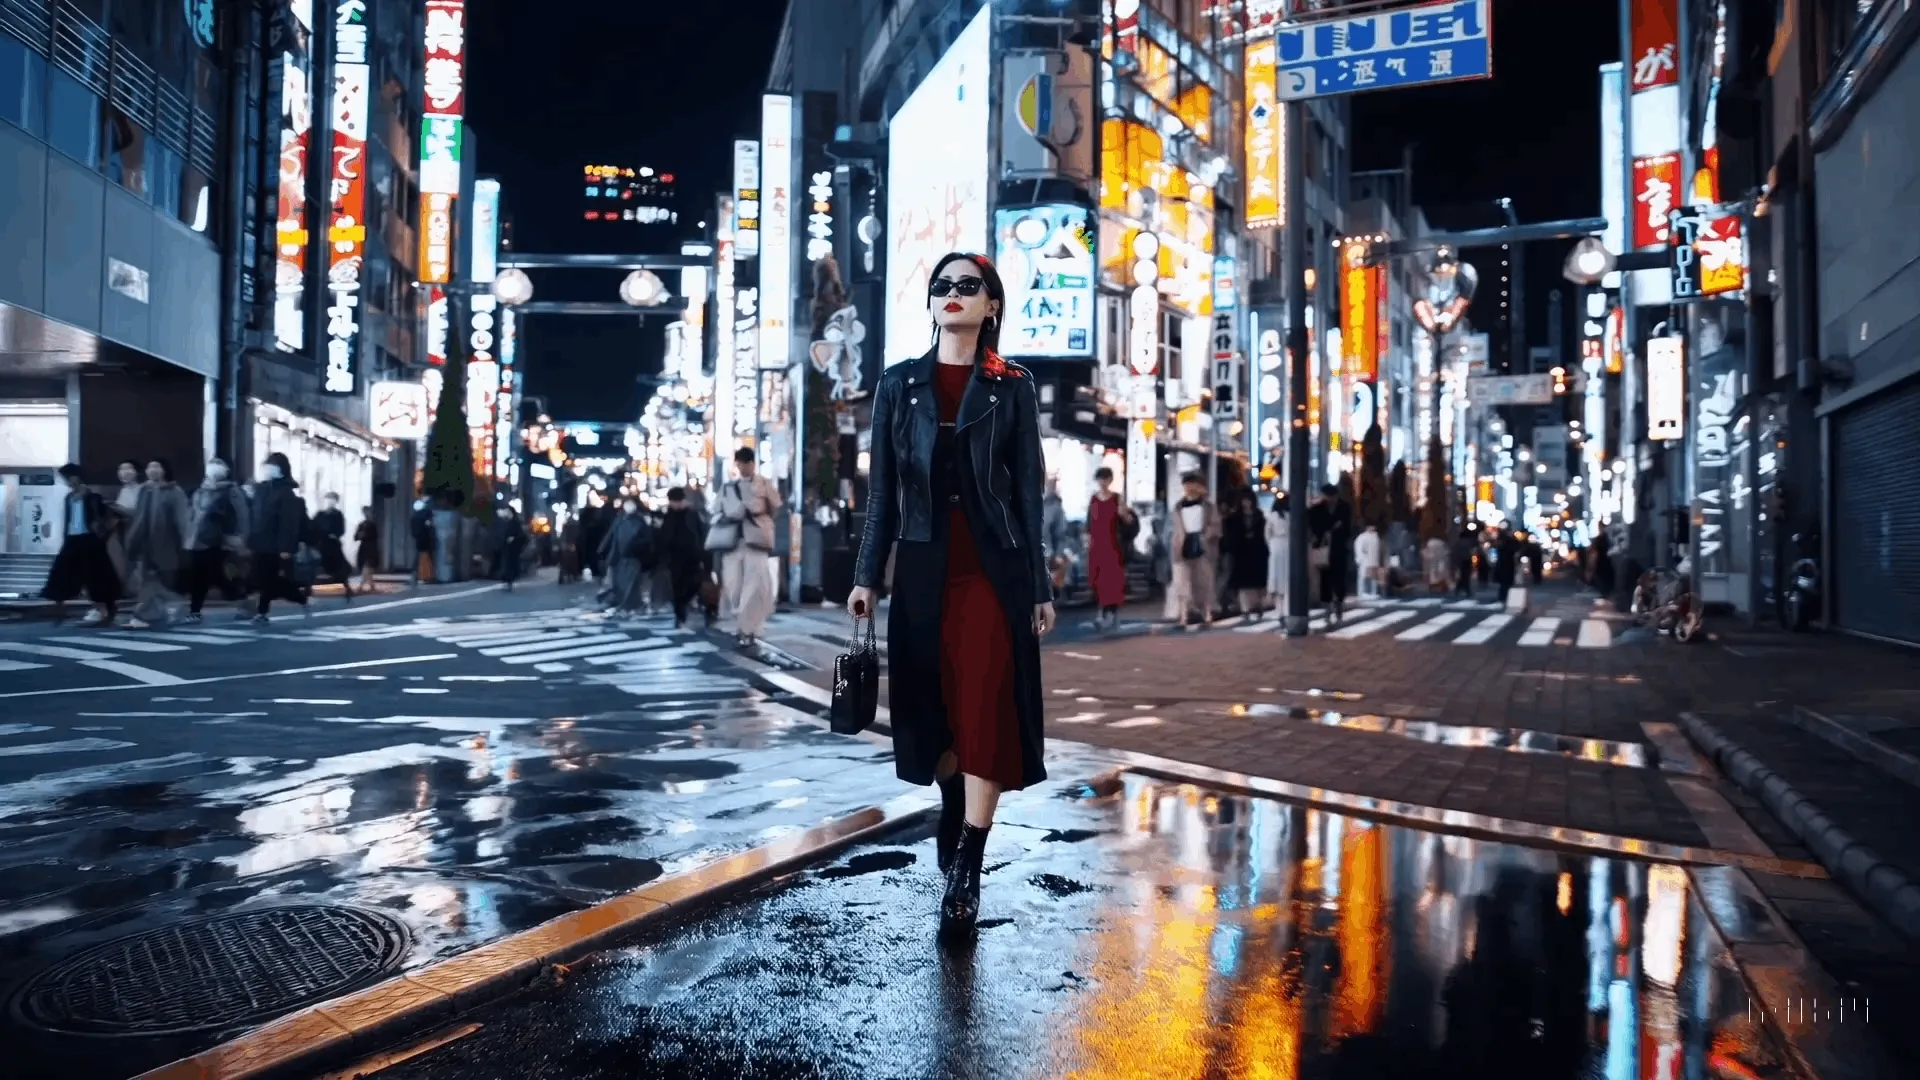 Sora - Woman crossing a street